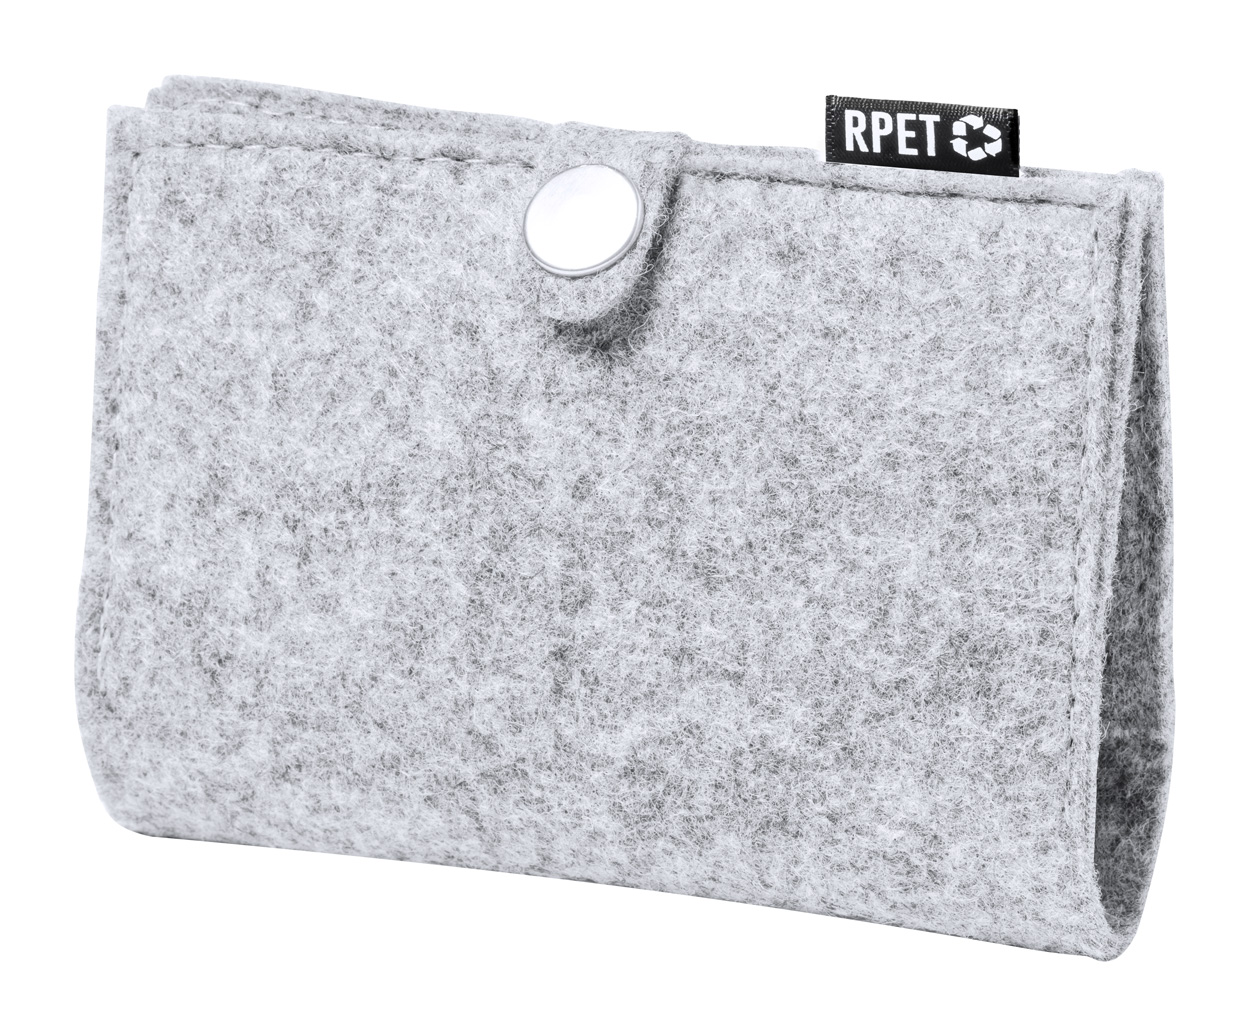 Felt card holder MERCEL made of RPET material - grey